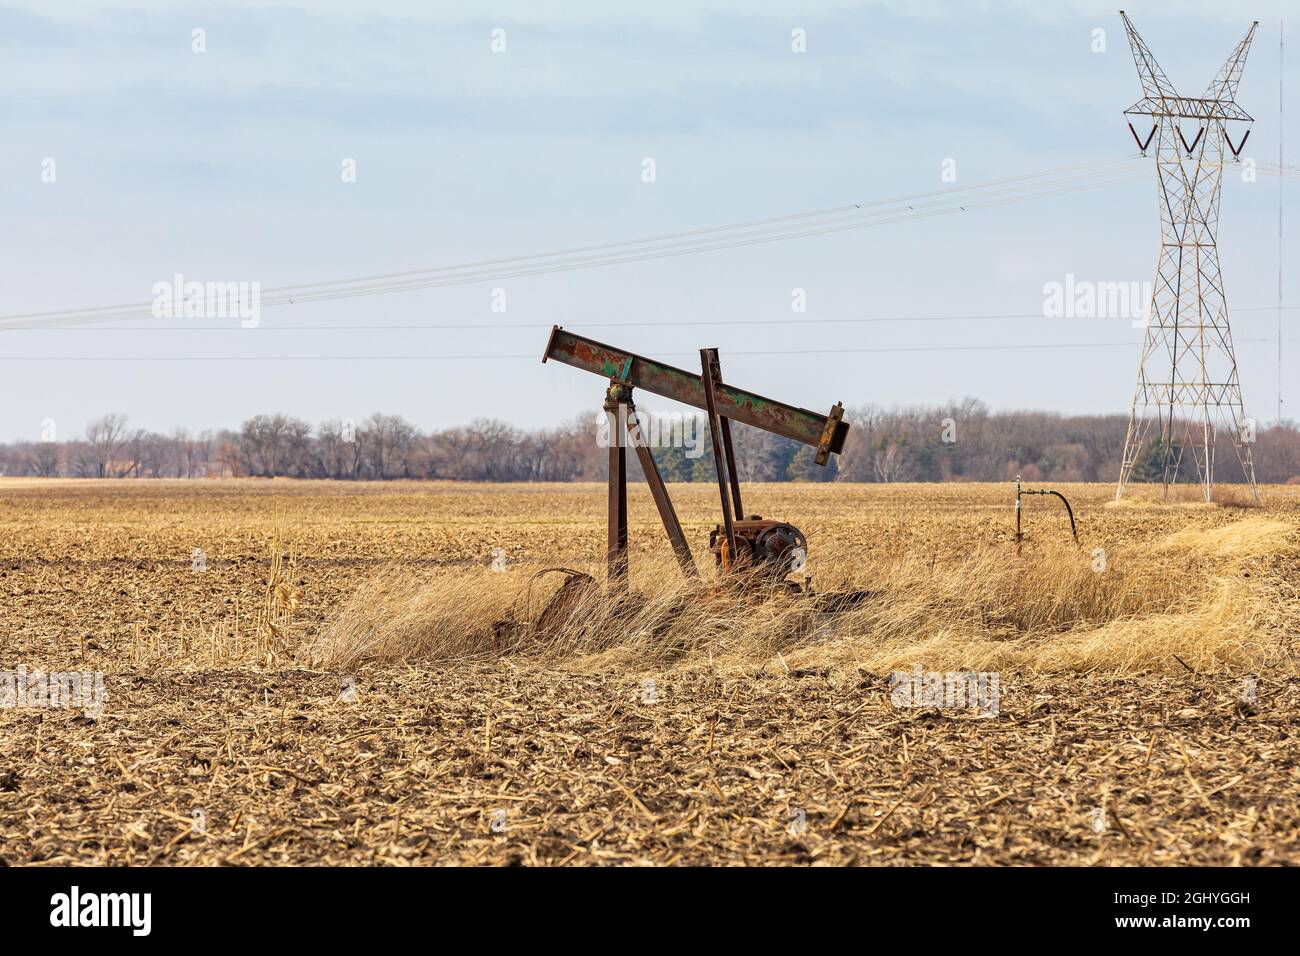 Ancienne pompe de puits de pétrole orpheline dans le champ agricole. Abandon de puits de pétrole, désaffectation, et concept de production de pétrole. Banque D'Images